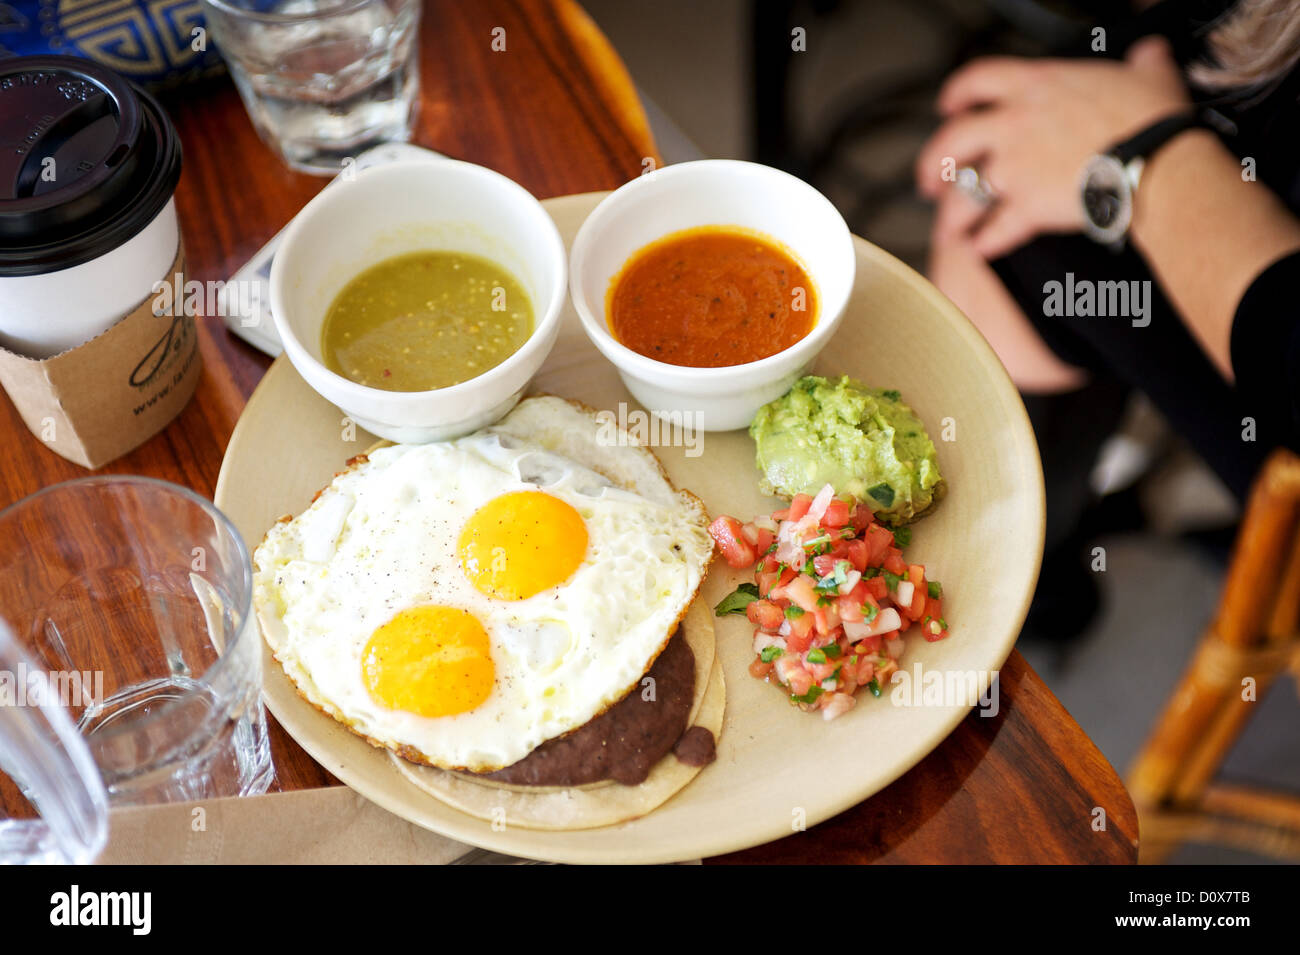 Desayuno mexicano fotografías e imágenes de alta resolución - Alamy